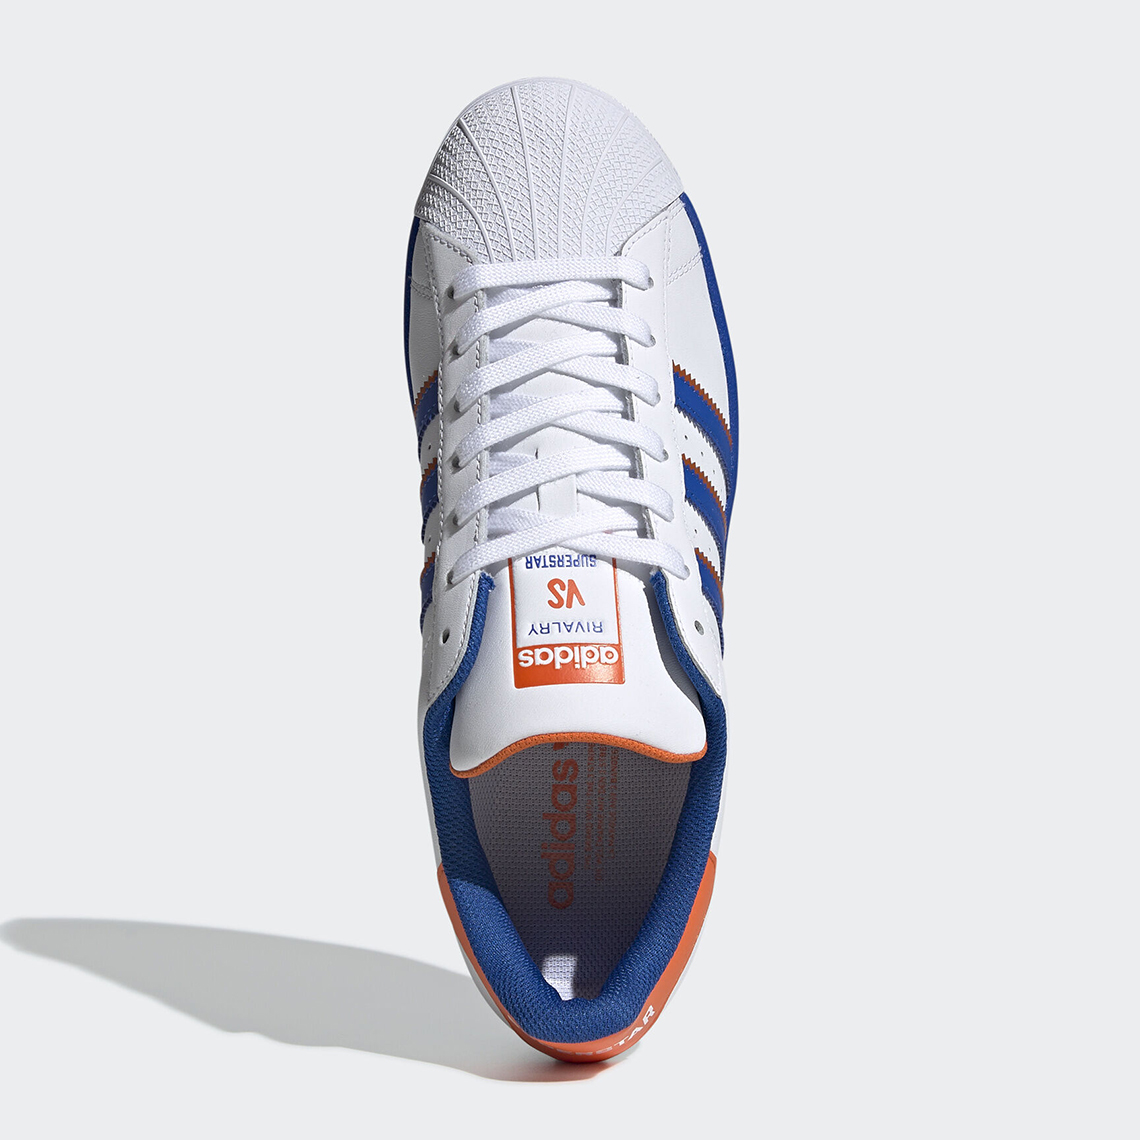 adidas superstar white blue orange